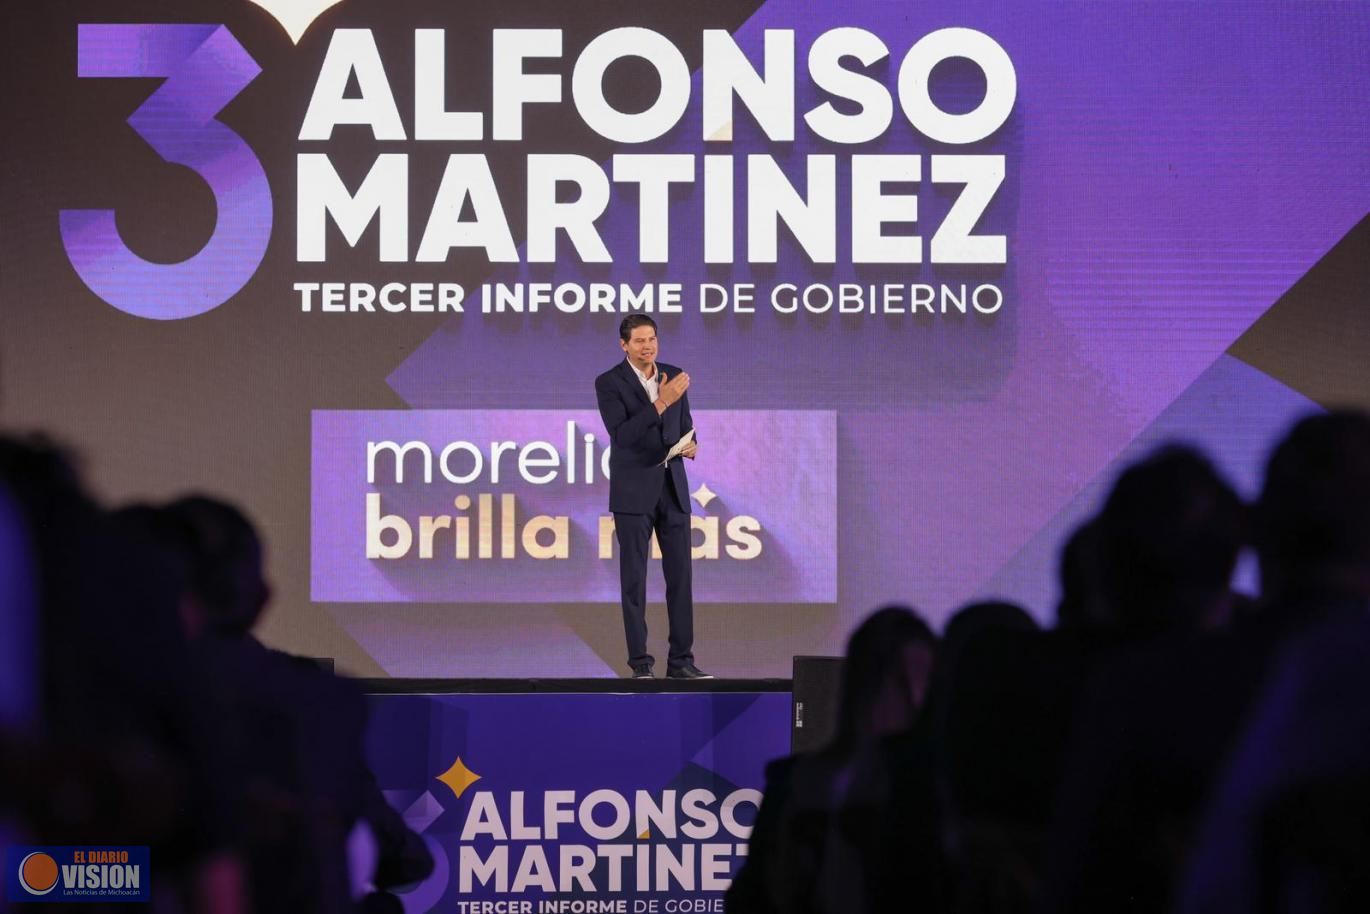 Espectacular Tercer Informe de Gobierno de Alfonso Martínez